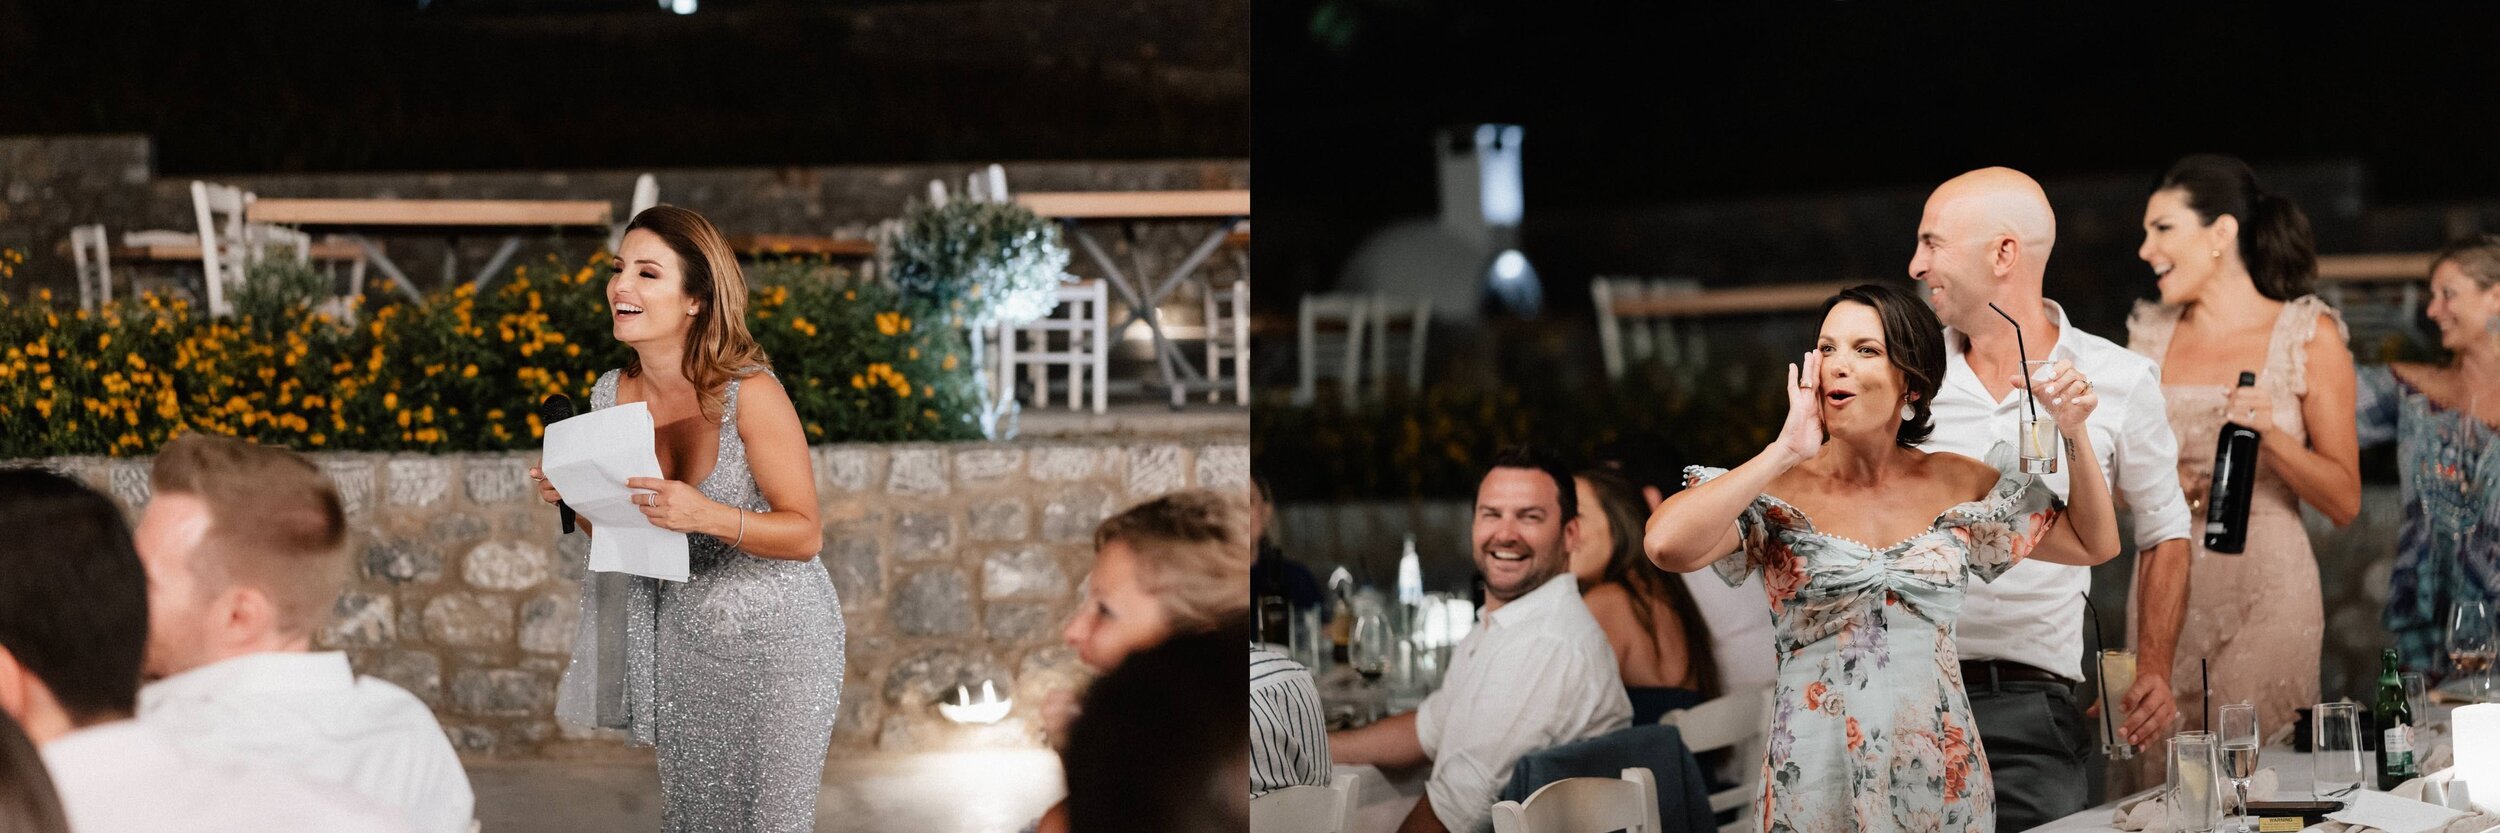 Greece+Santorini+Rhodes+wedding+photogtaphy-183.jpg